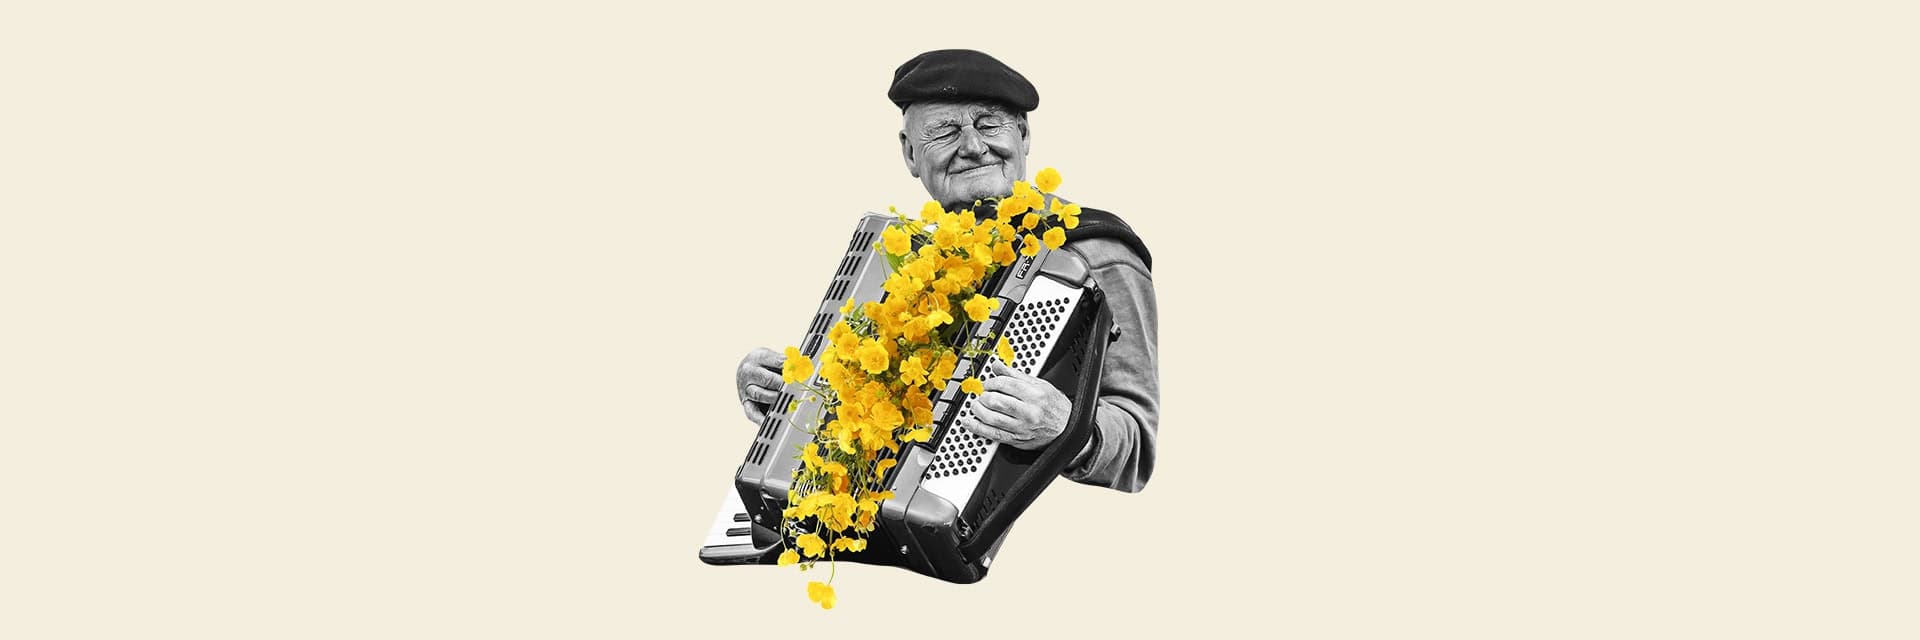 Ett kollage med en man som spelar dragspel och gula blommor. Beige bakgrund.